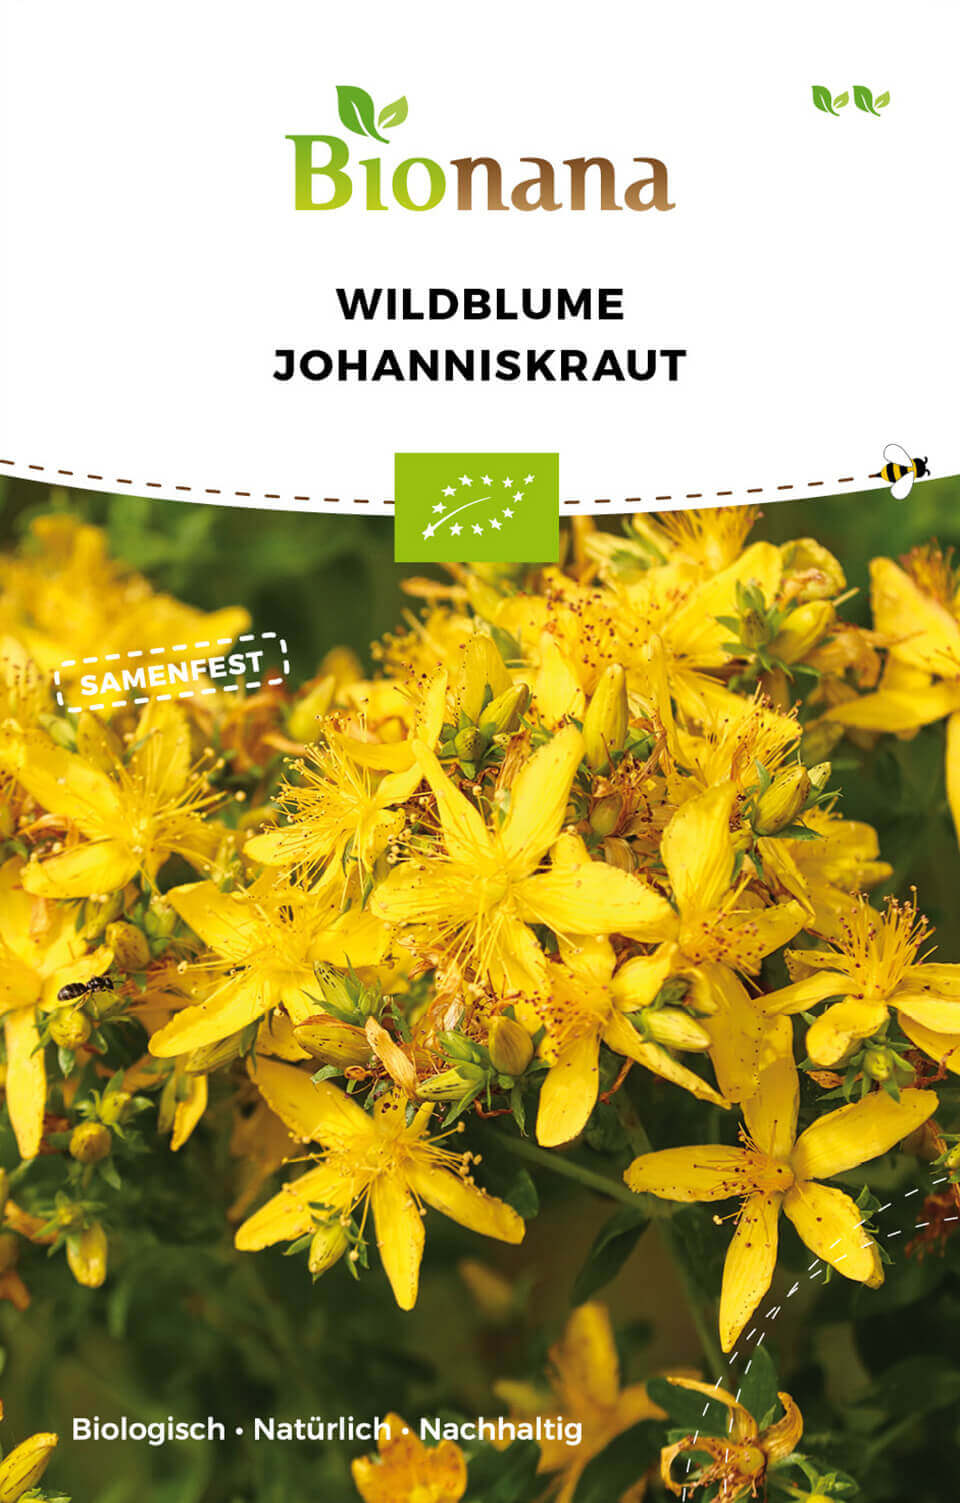 Wildblume Johanniskraut | BIO Wildblumensamen von Bionana